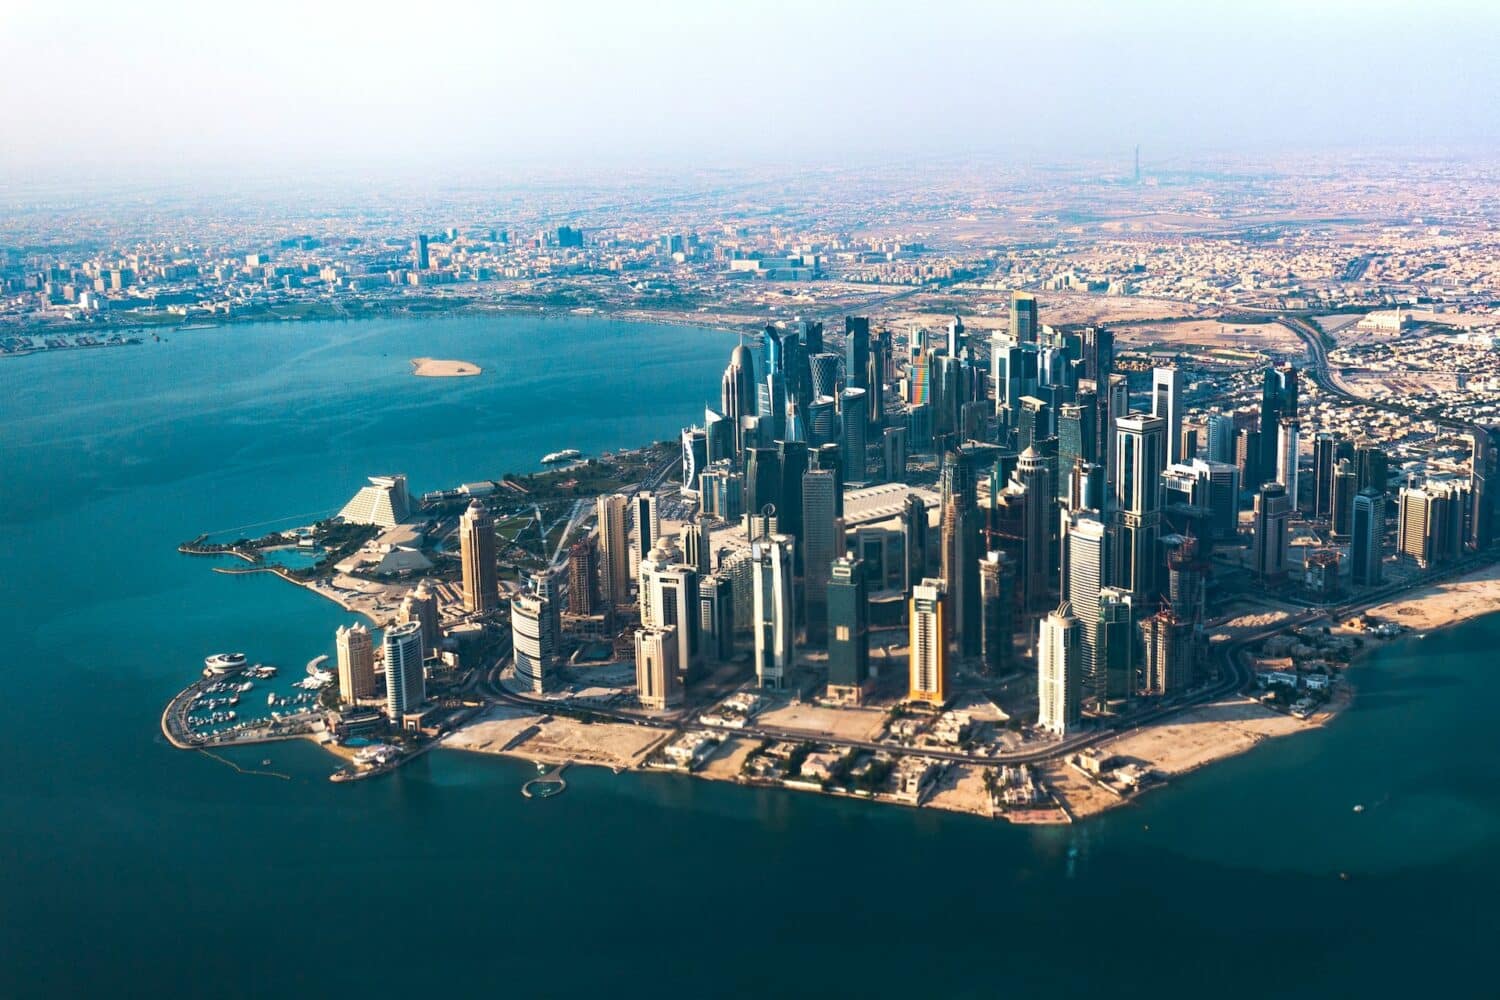 Vista aérea de Doha. Com diversos prédios altíssimos, a cidade é banhada por todo o redor pelo mar do Golfo, de águas turquesa. - Foto: Radoslaw Prekurat via Unsplash